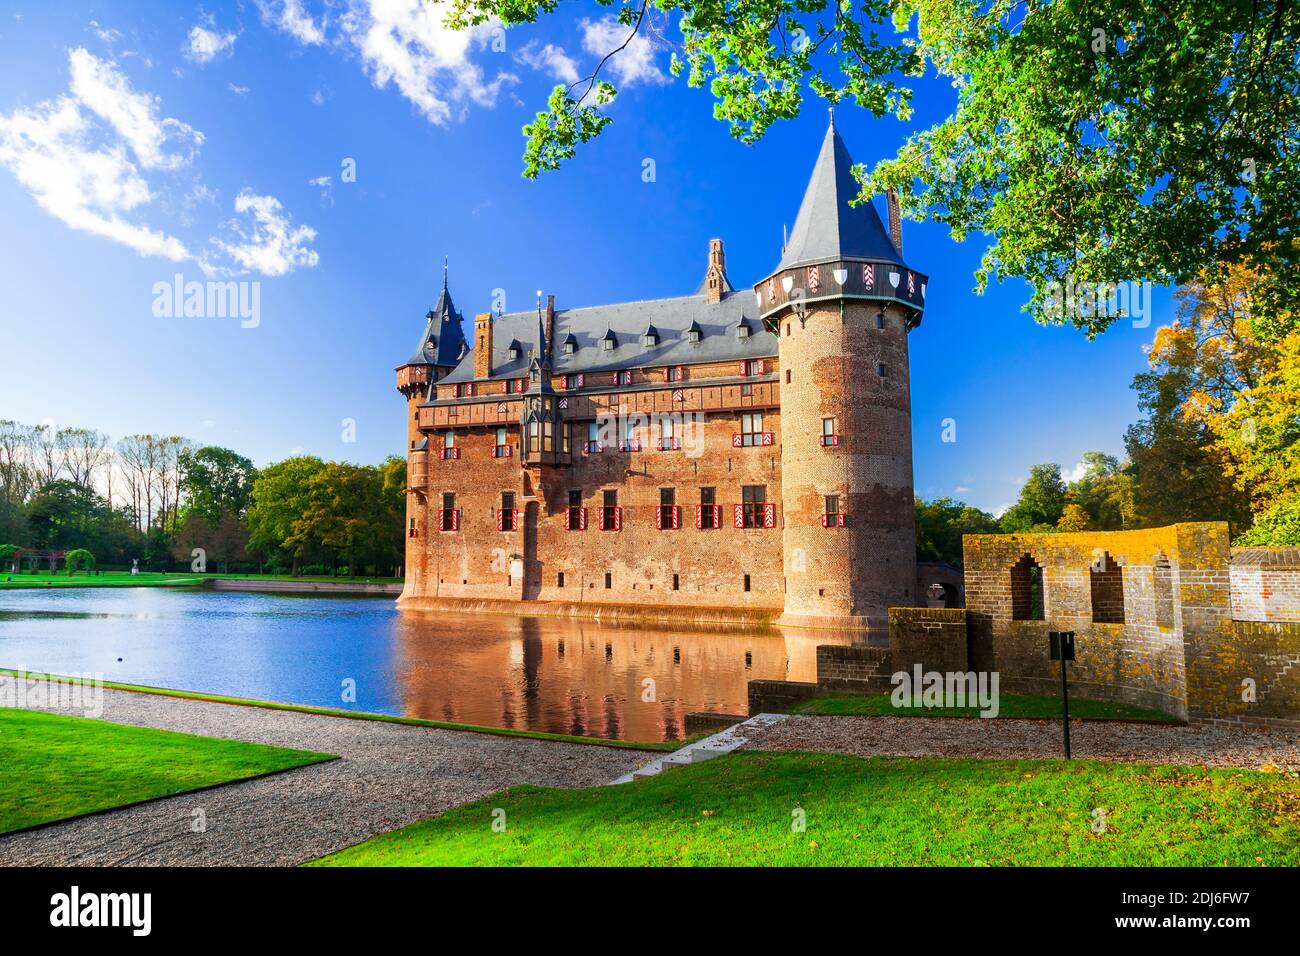 Most beautiful medieval castles of Europe - De Haar in Holland, Utrecht town, Netherlands Stock Photo